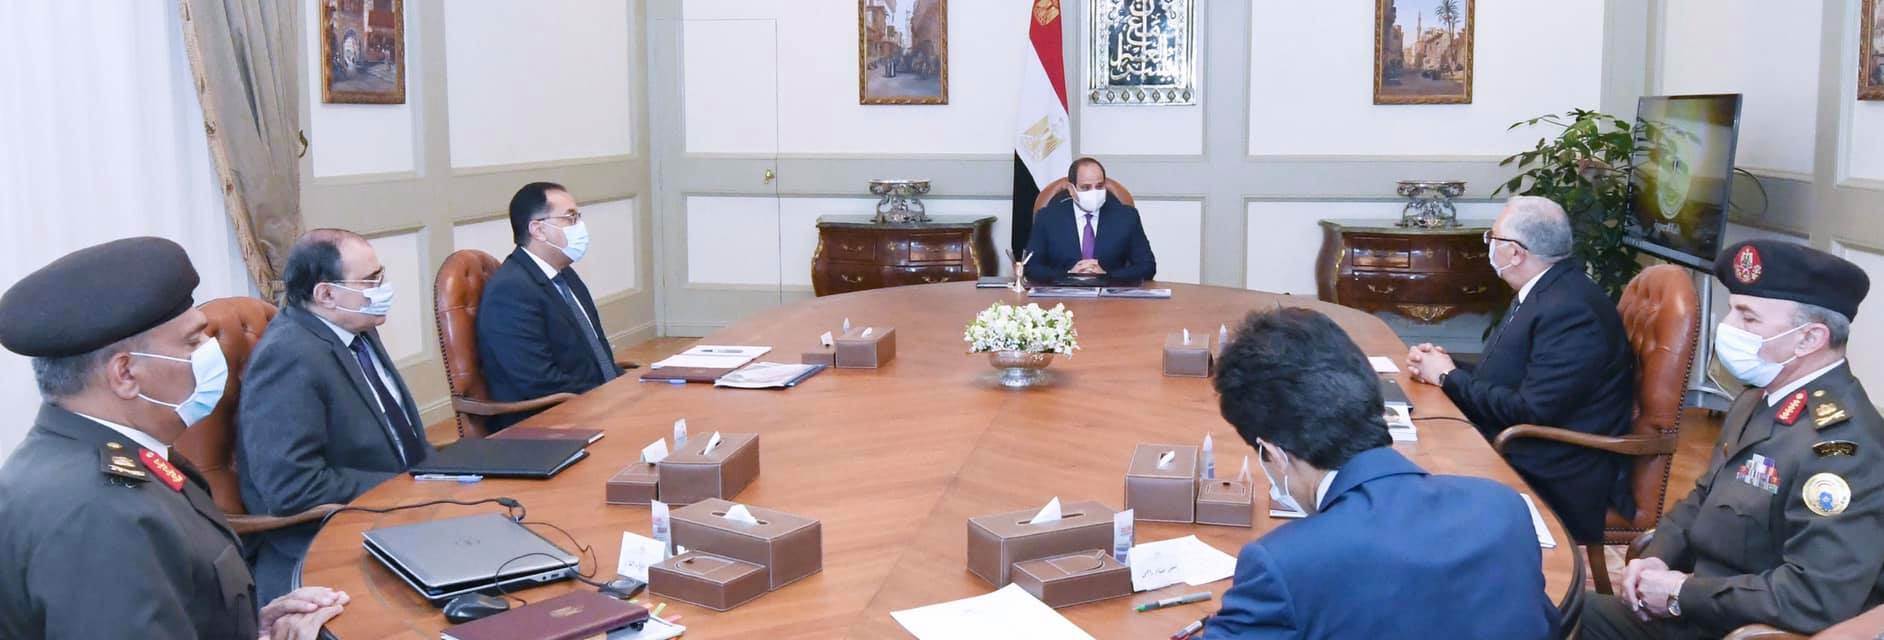 الرئيس السيسي خلال اجتماع الإعلان عن مشروع الدلتا الجديدة